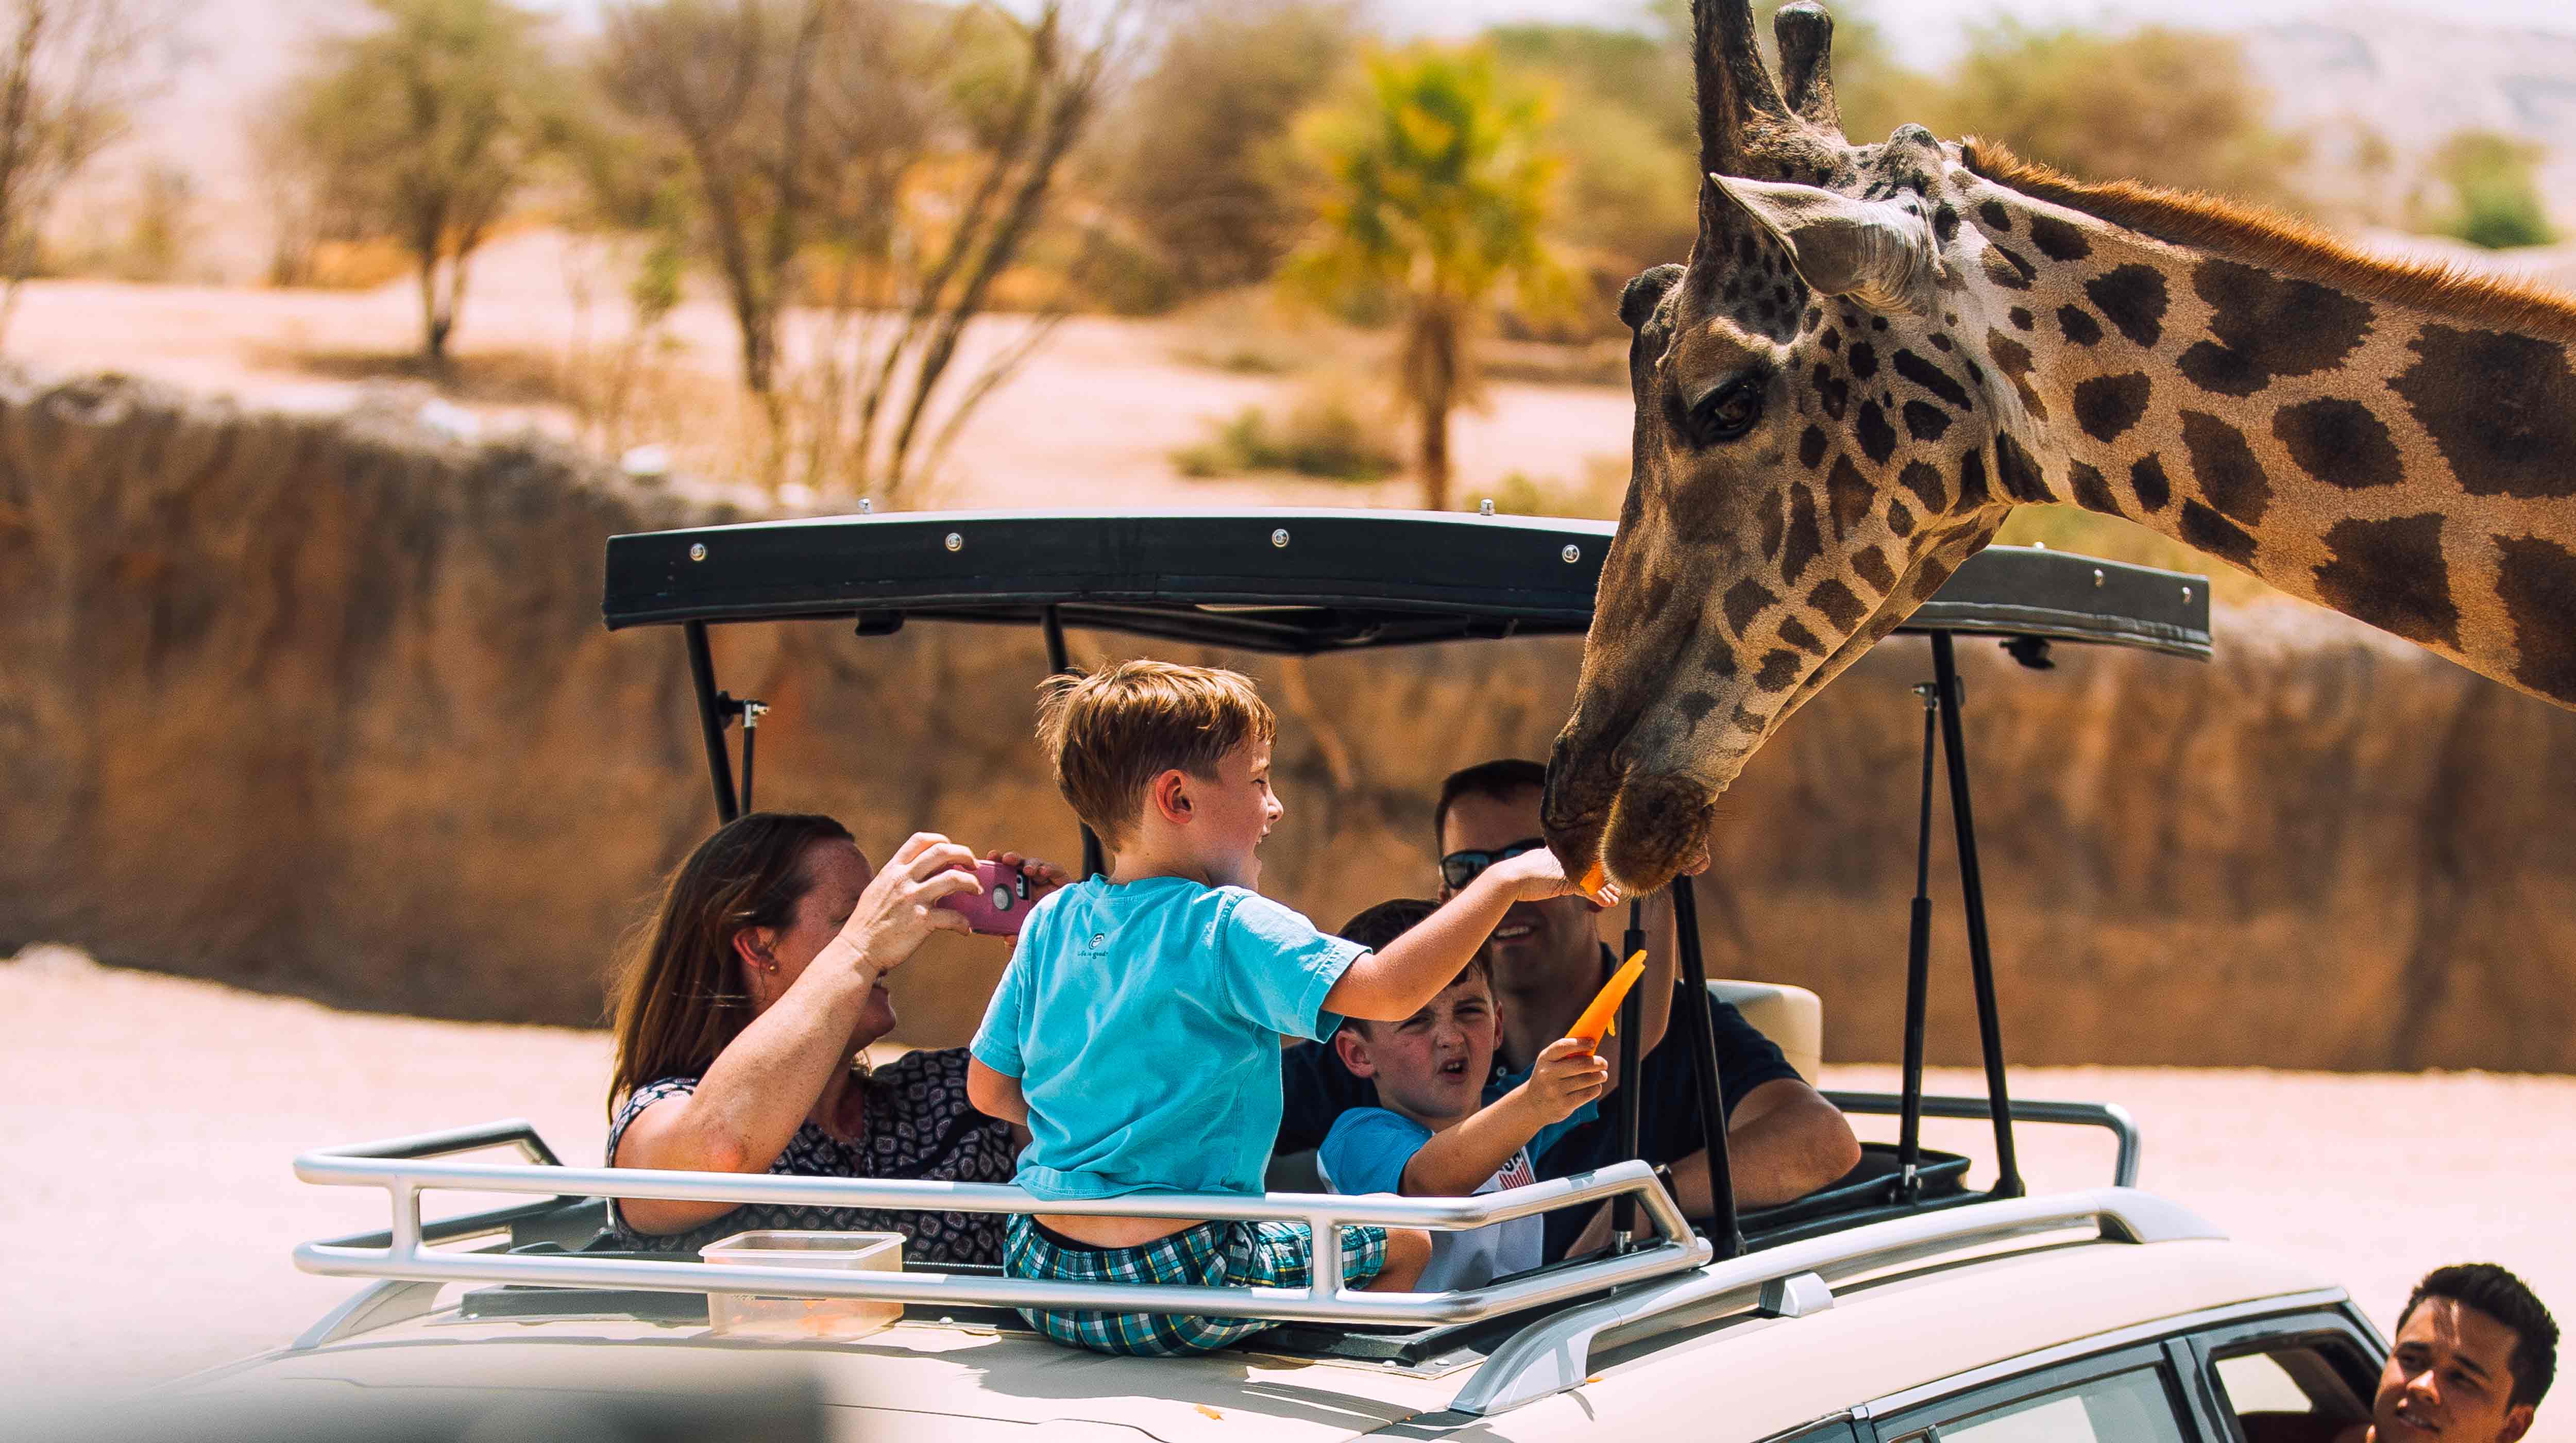 Boys feeding a giraffe at Al Ain Zoo